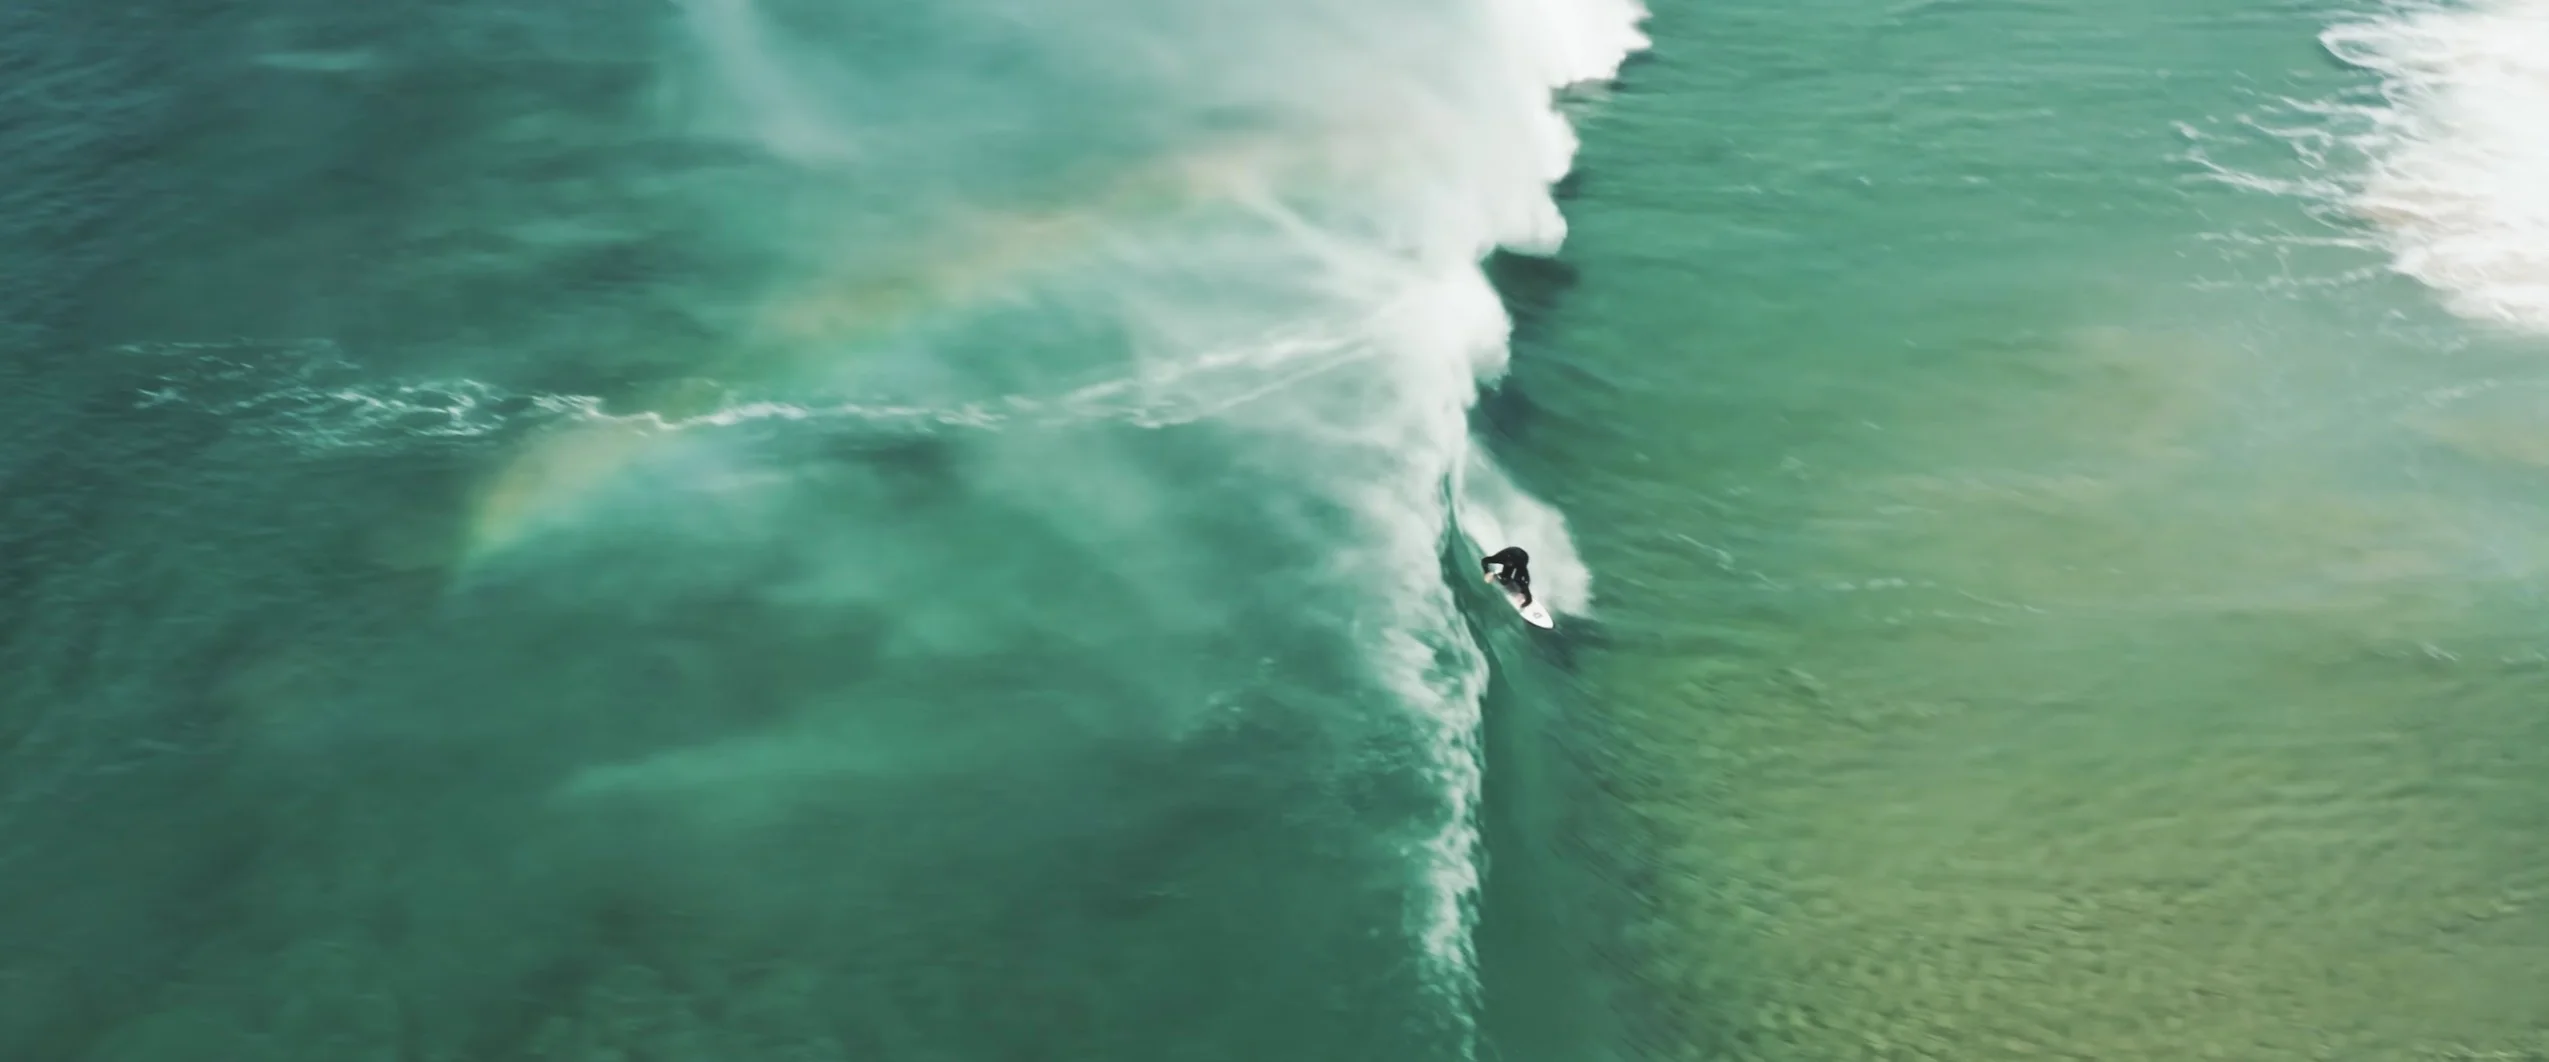 Vidéo : dans ce court-métrage absolument sublime, les surfeurs deviennent des artistes